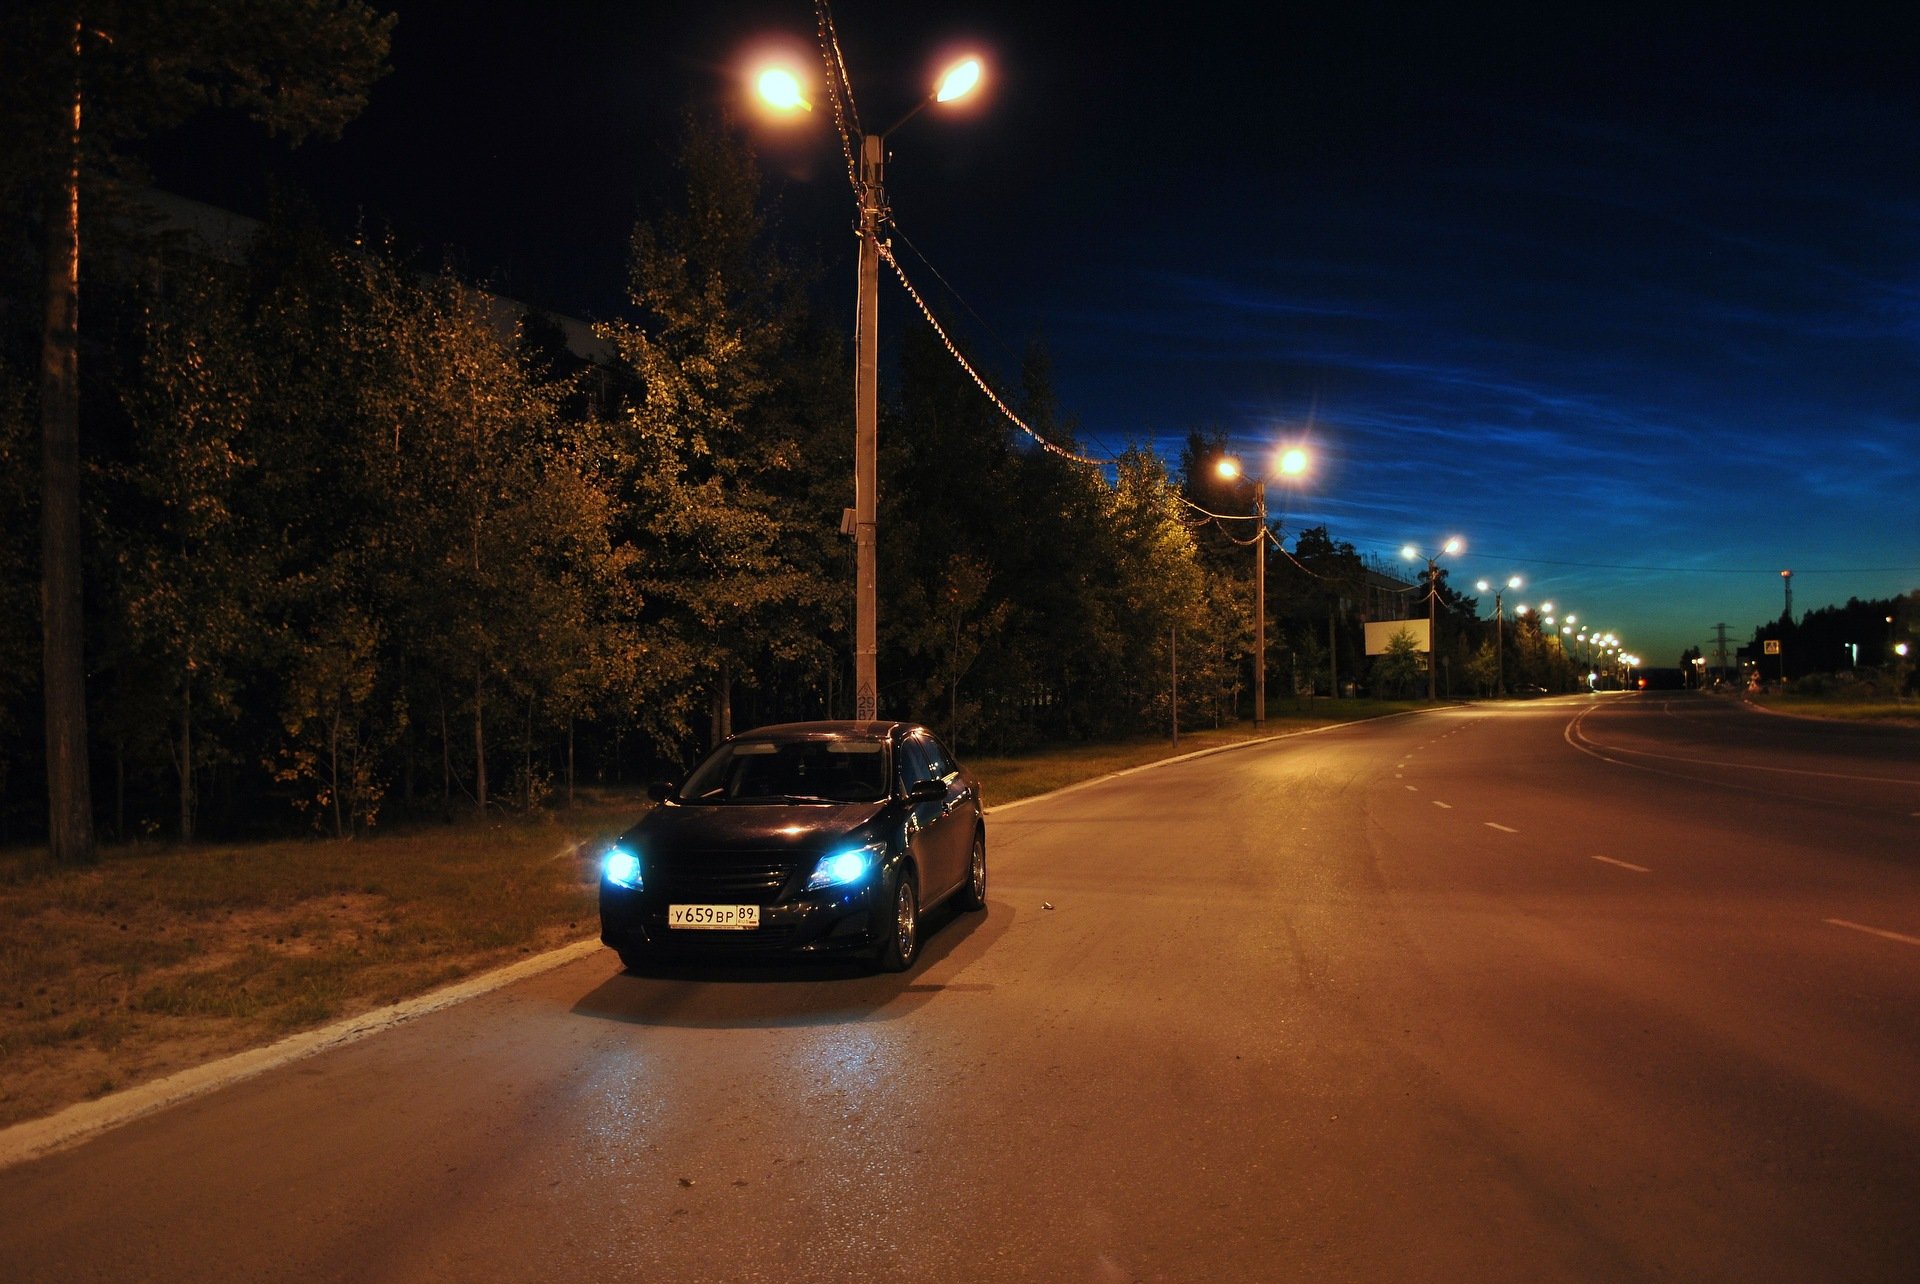 Автомобиль ночью на дороге. Машина ночью. Фото в машине ночью. Ночная дорога. Ночной город из машины.